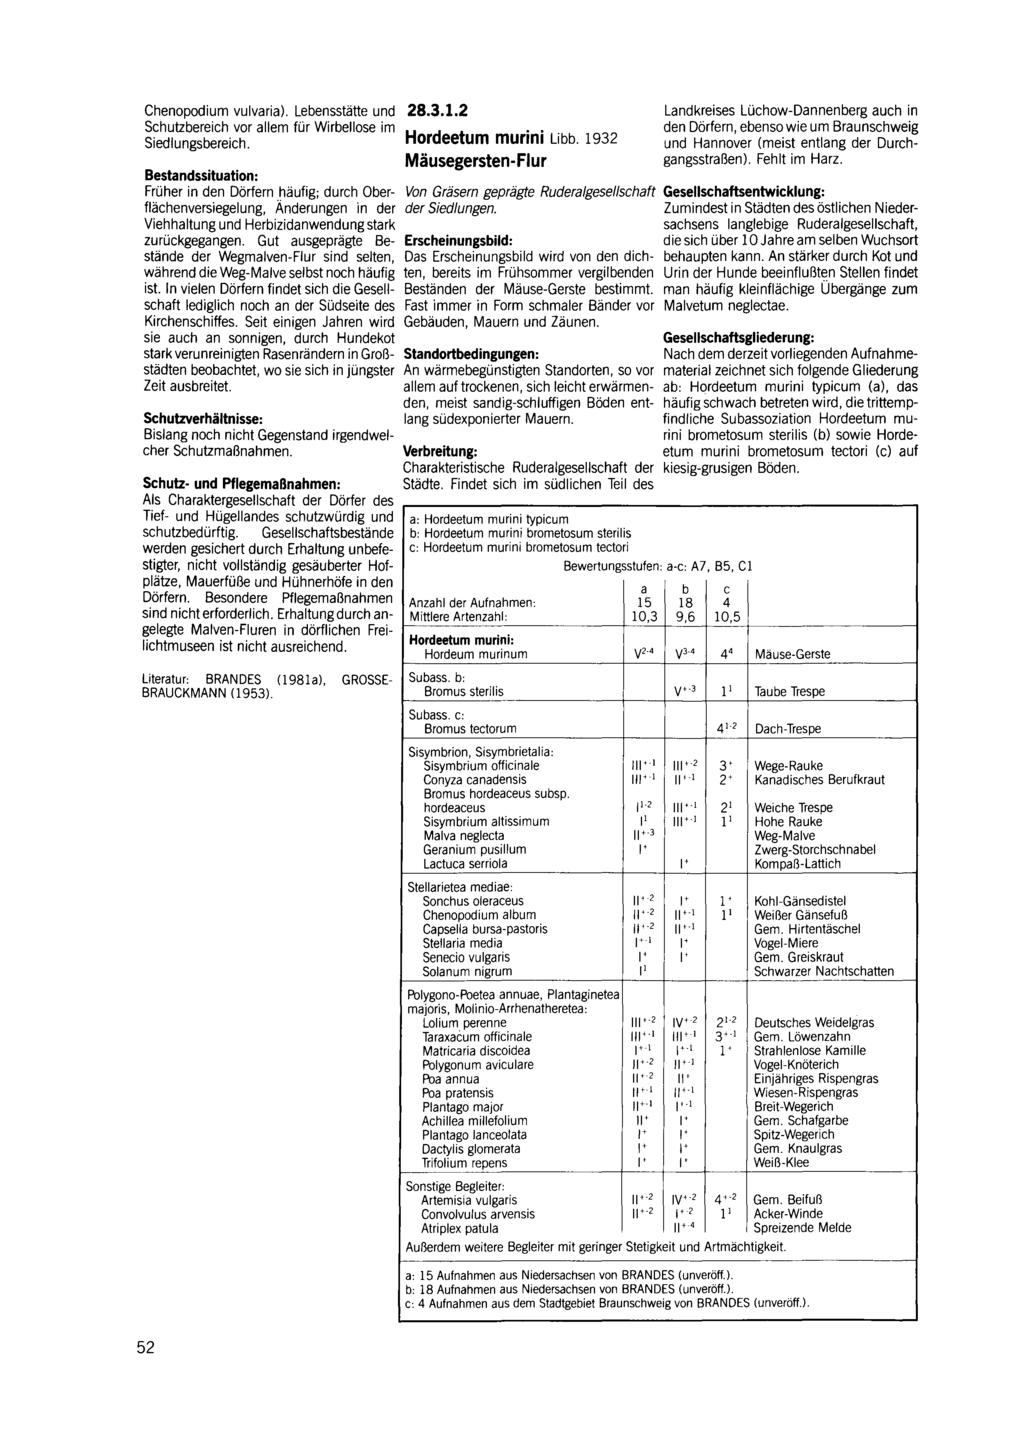 Chenopodium vulvaria). Lebensstätte und 28.3.1.2 Schutzbereich vor allem für Wirbellose im Siedlungsbereich. Hordeetum murini Libb.